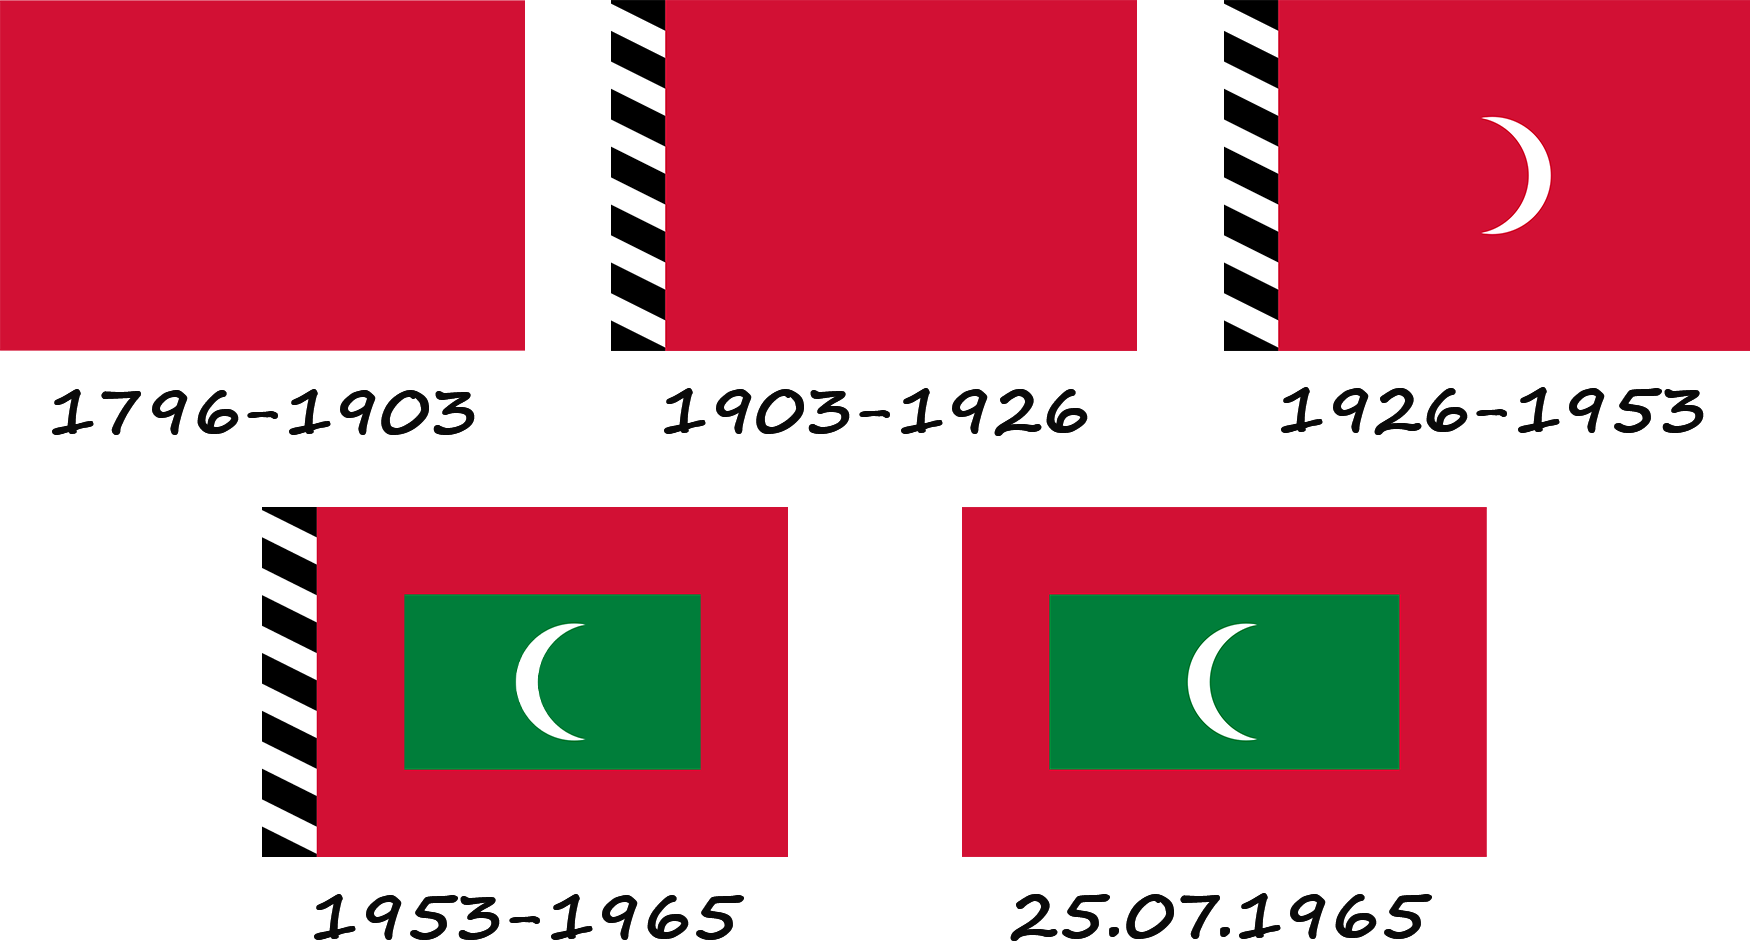 Expliquez brièvement comment le drapeau des Maldives a changé.